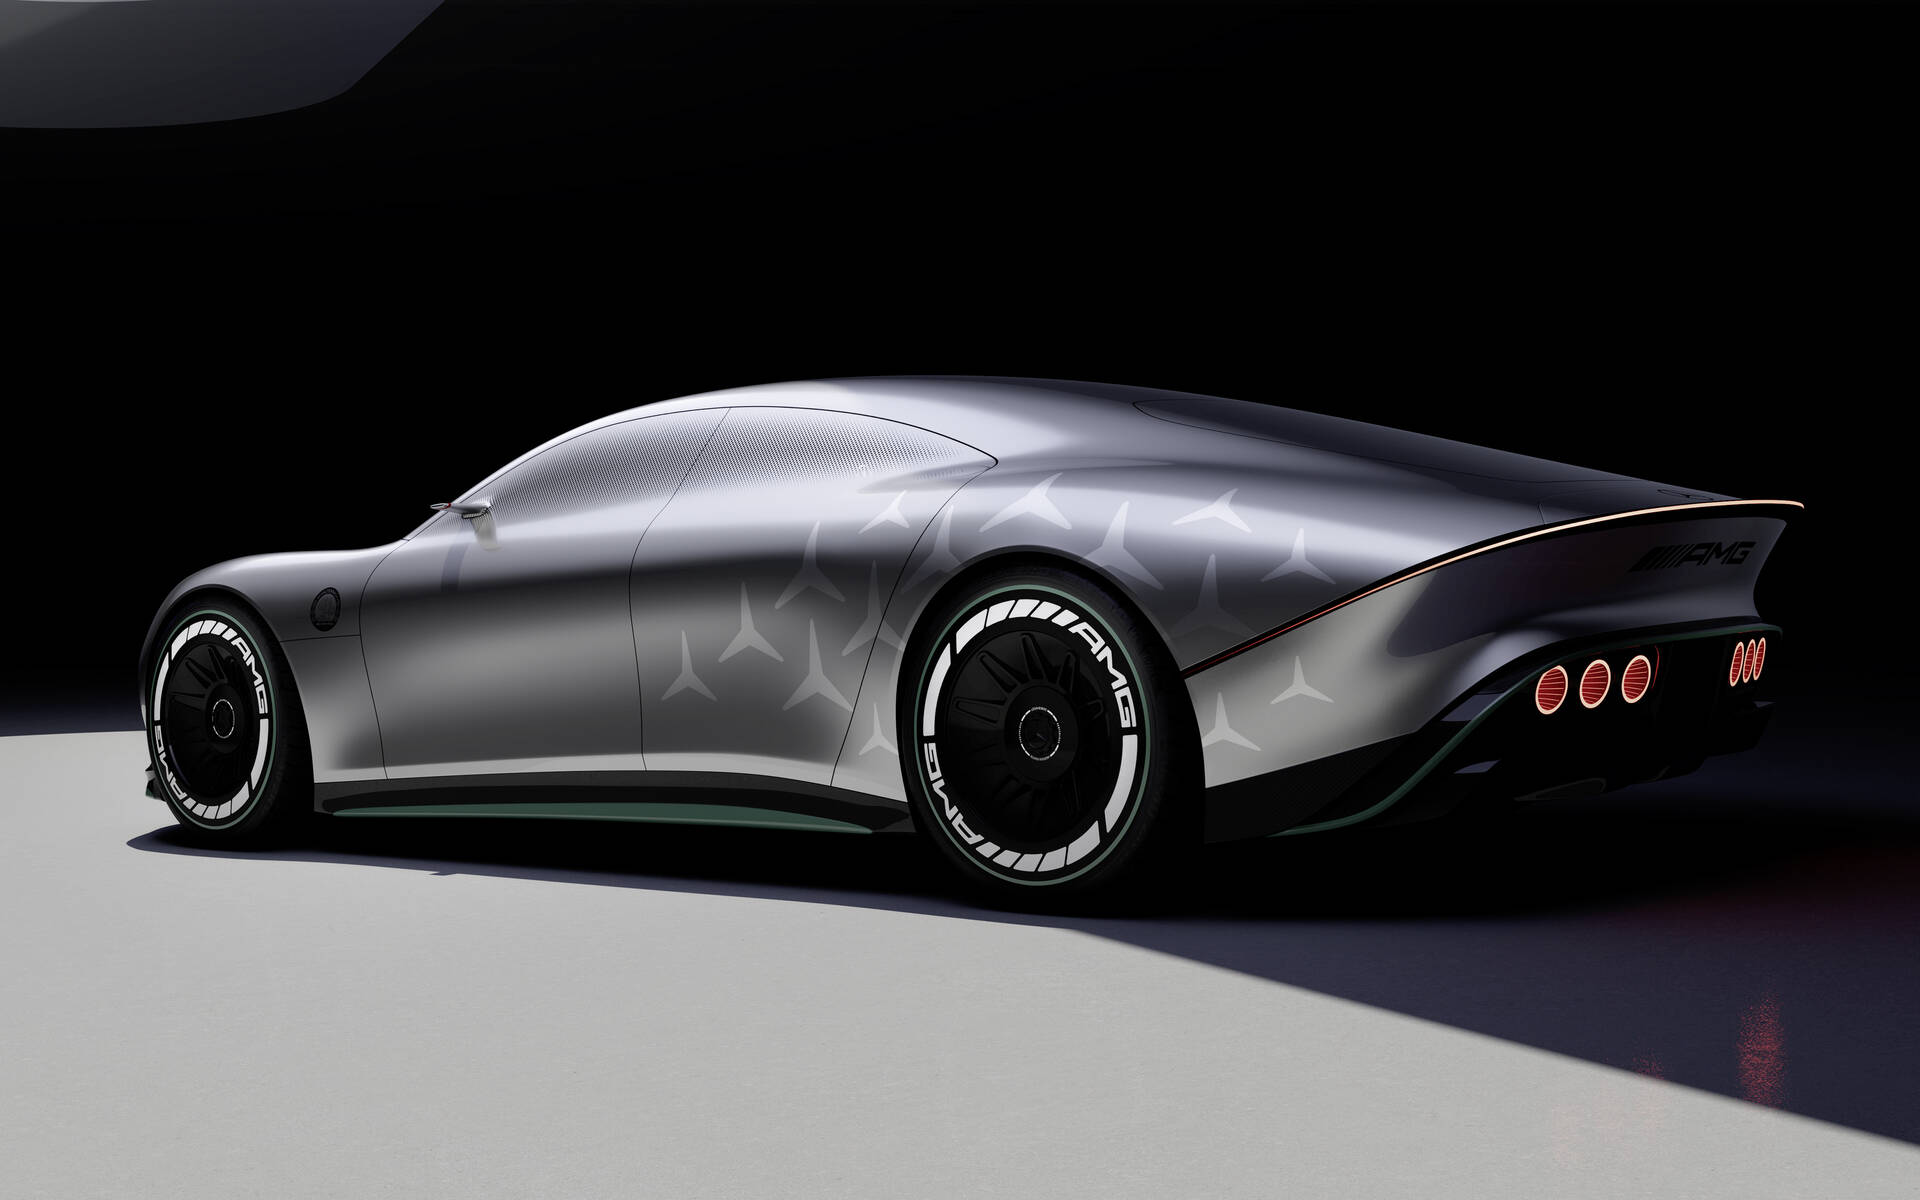 Voici le spectaculaire intérieur de la future Mercedes Classe E